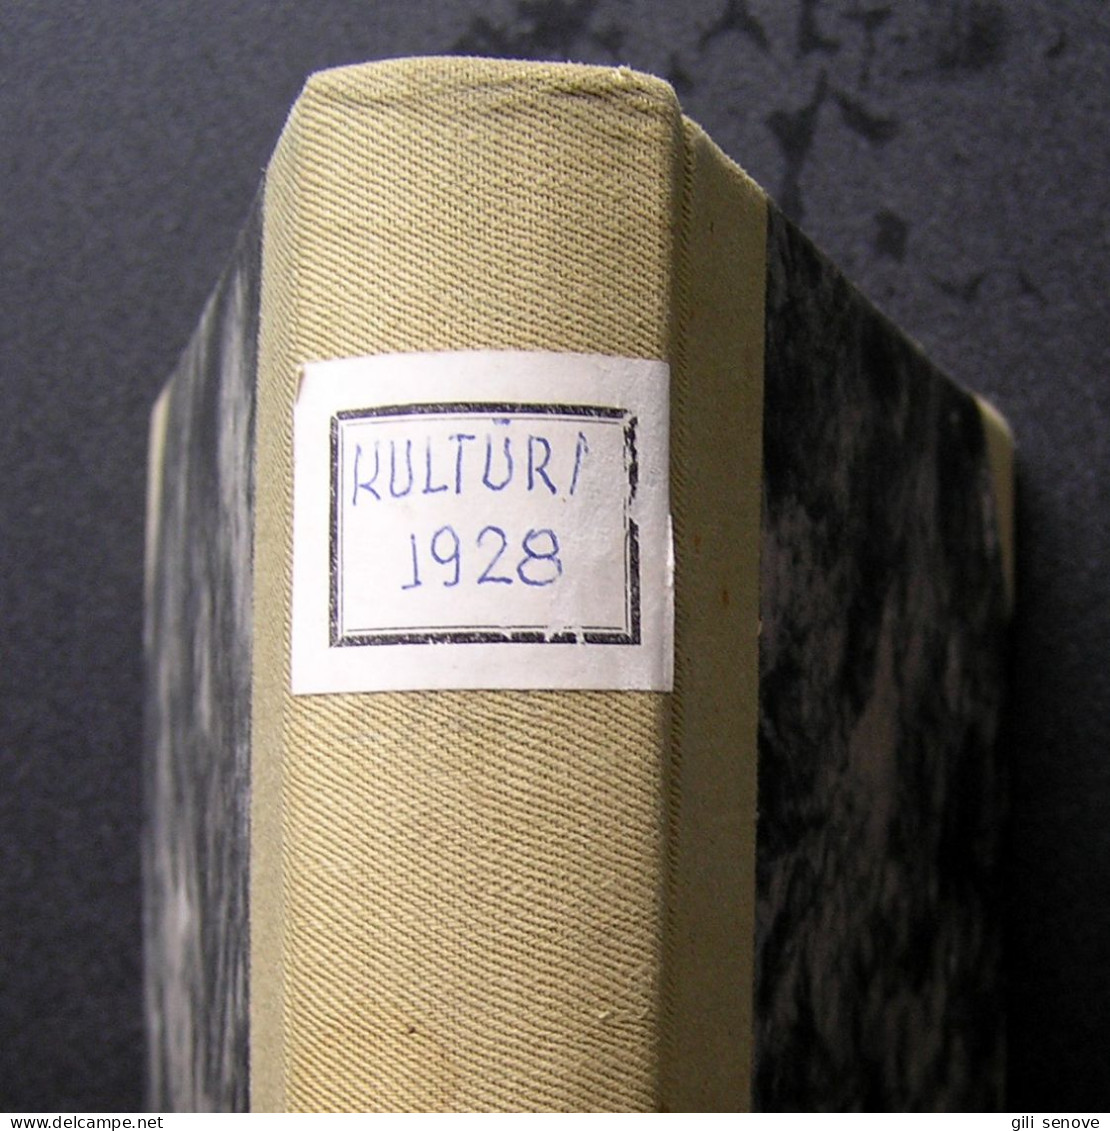 Lithuanian Magazine / Kultūra 1928 Complete